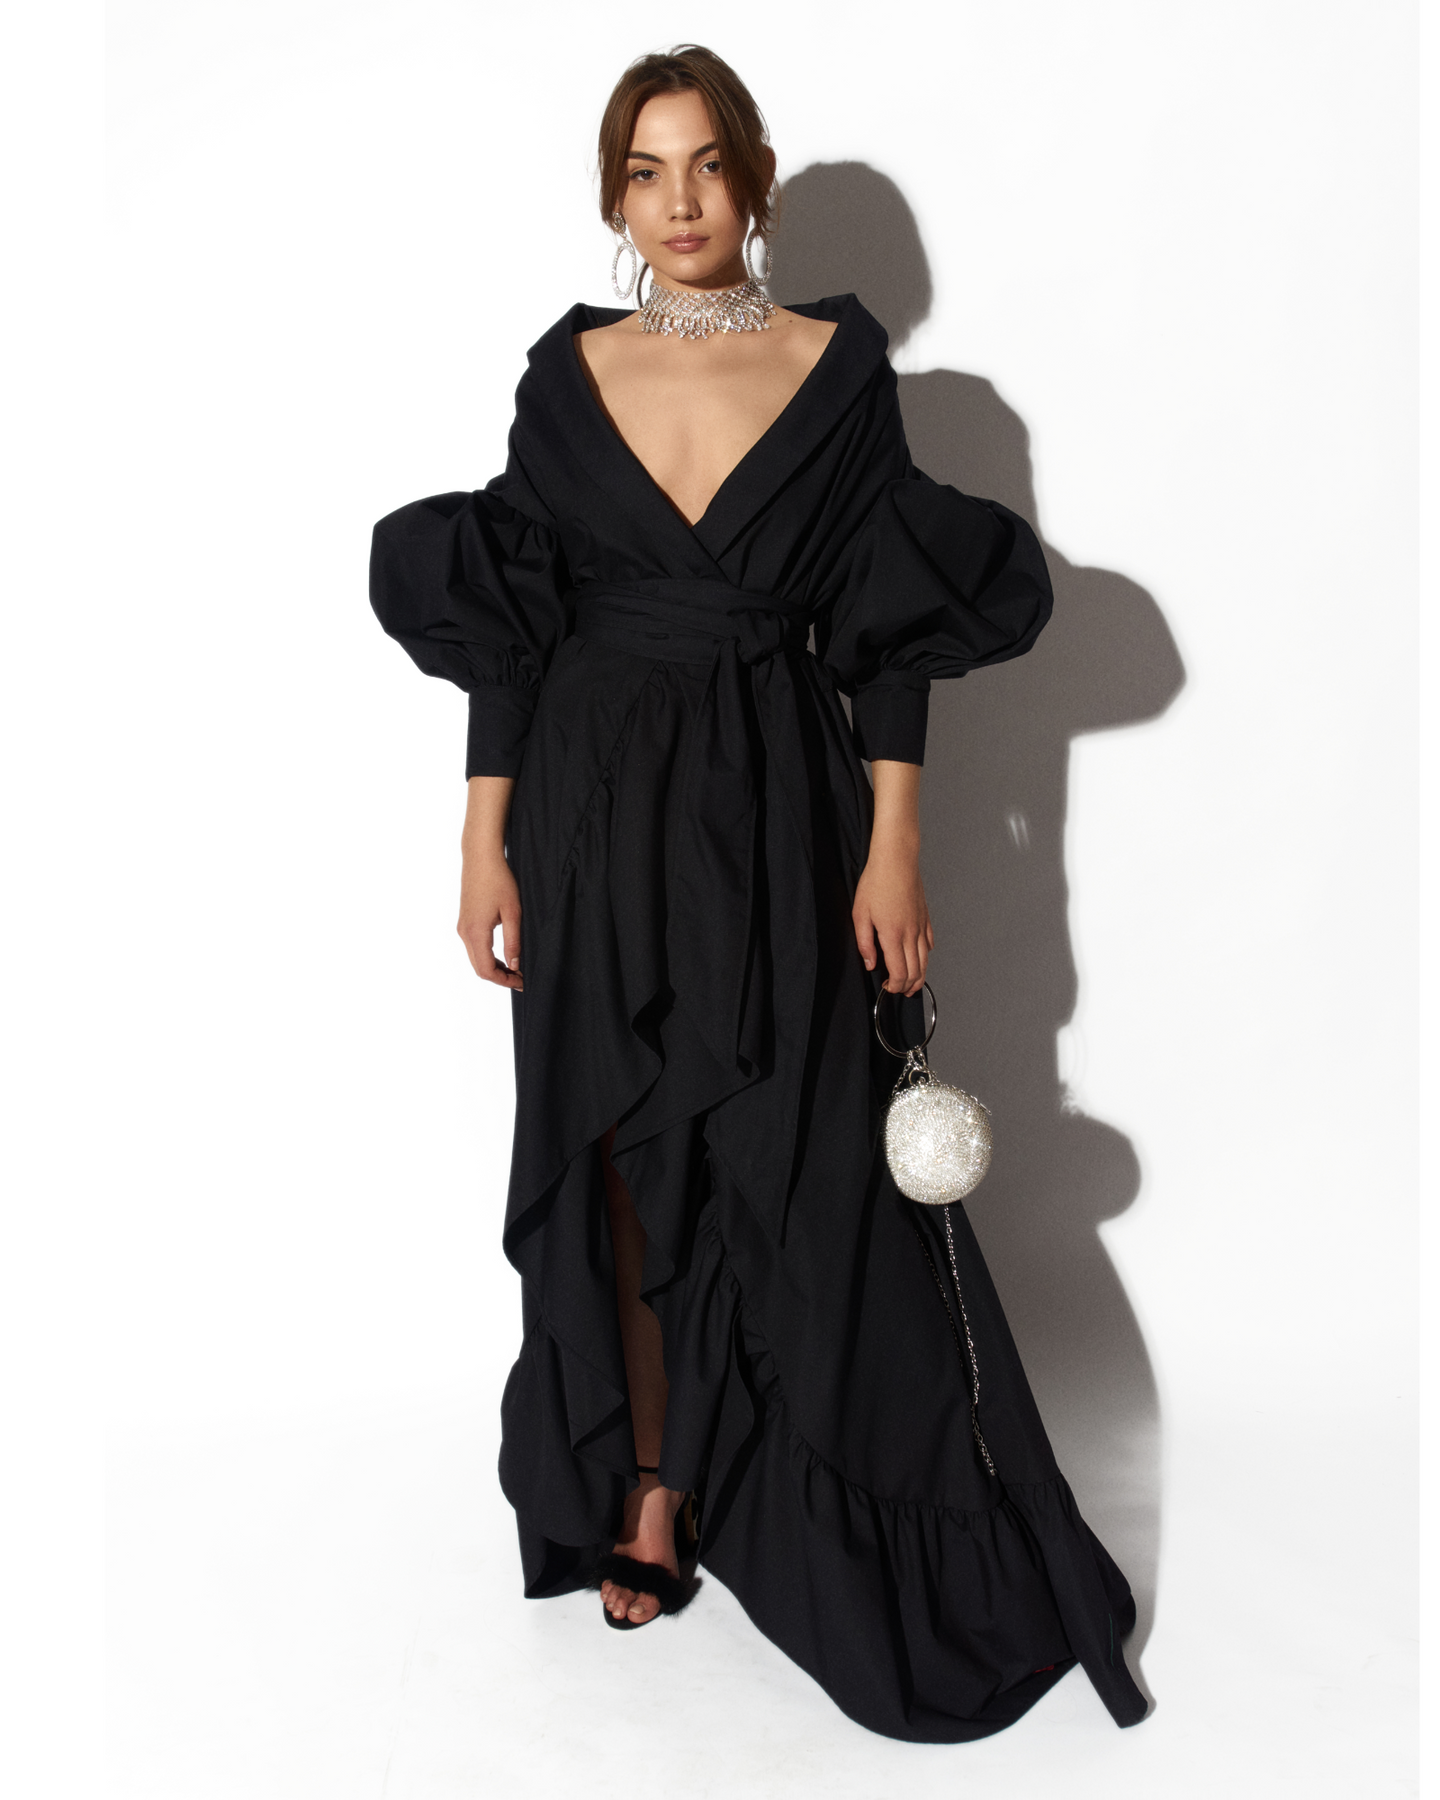 Black Kimono Gown by Morphine Fashion